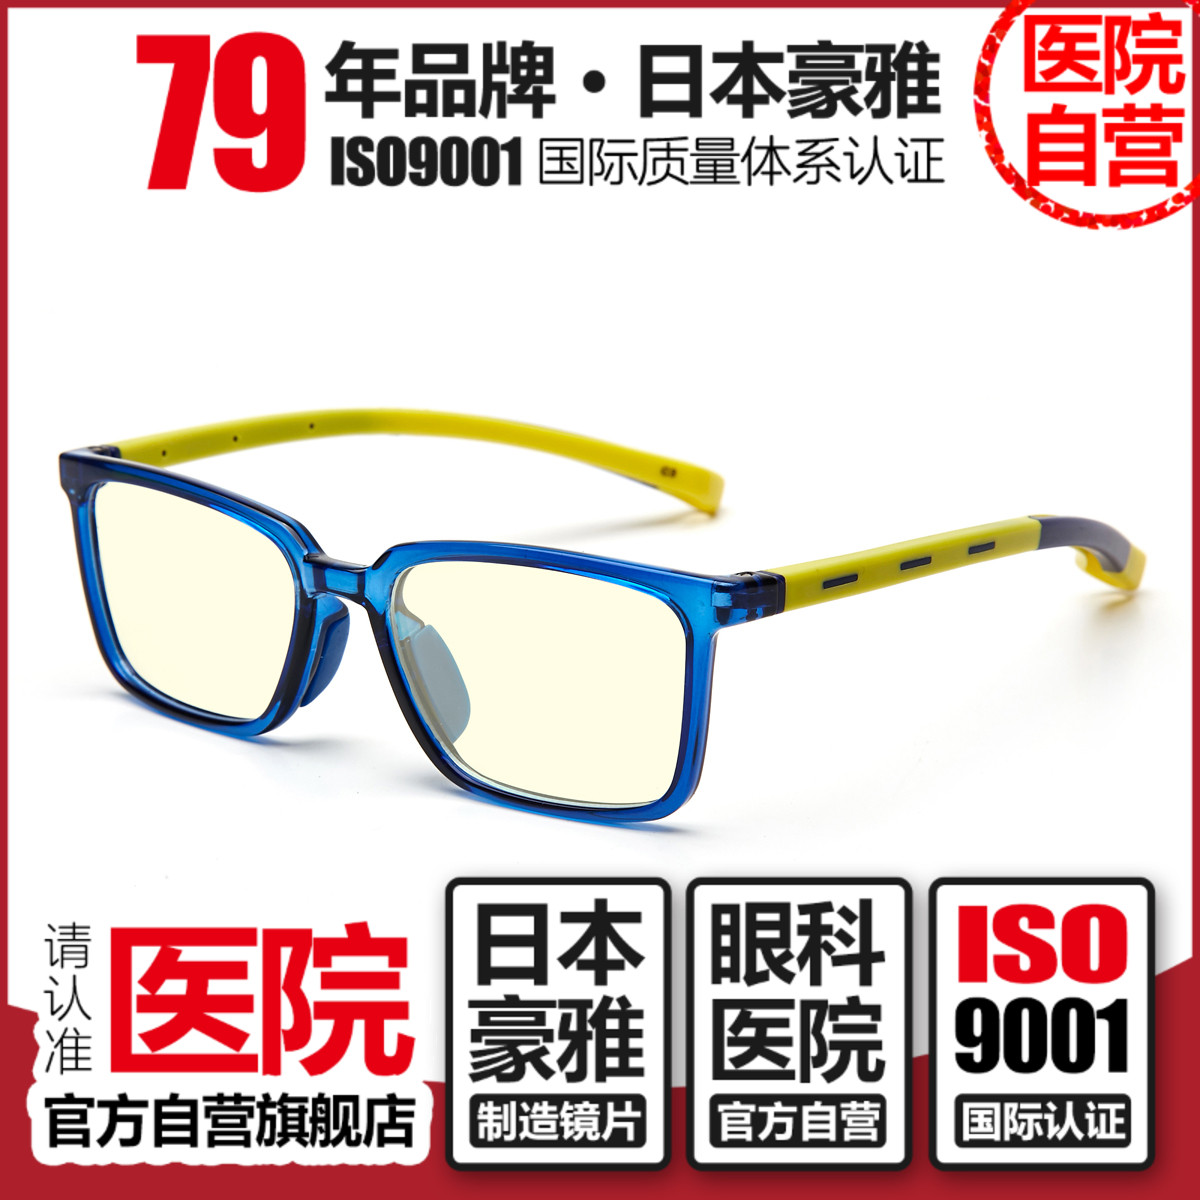 日本豪雅儿童方框电脑手机电视专用护眼镜小孩防蓝光抗紫外线辐射